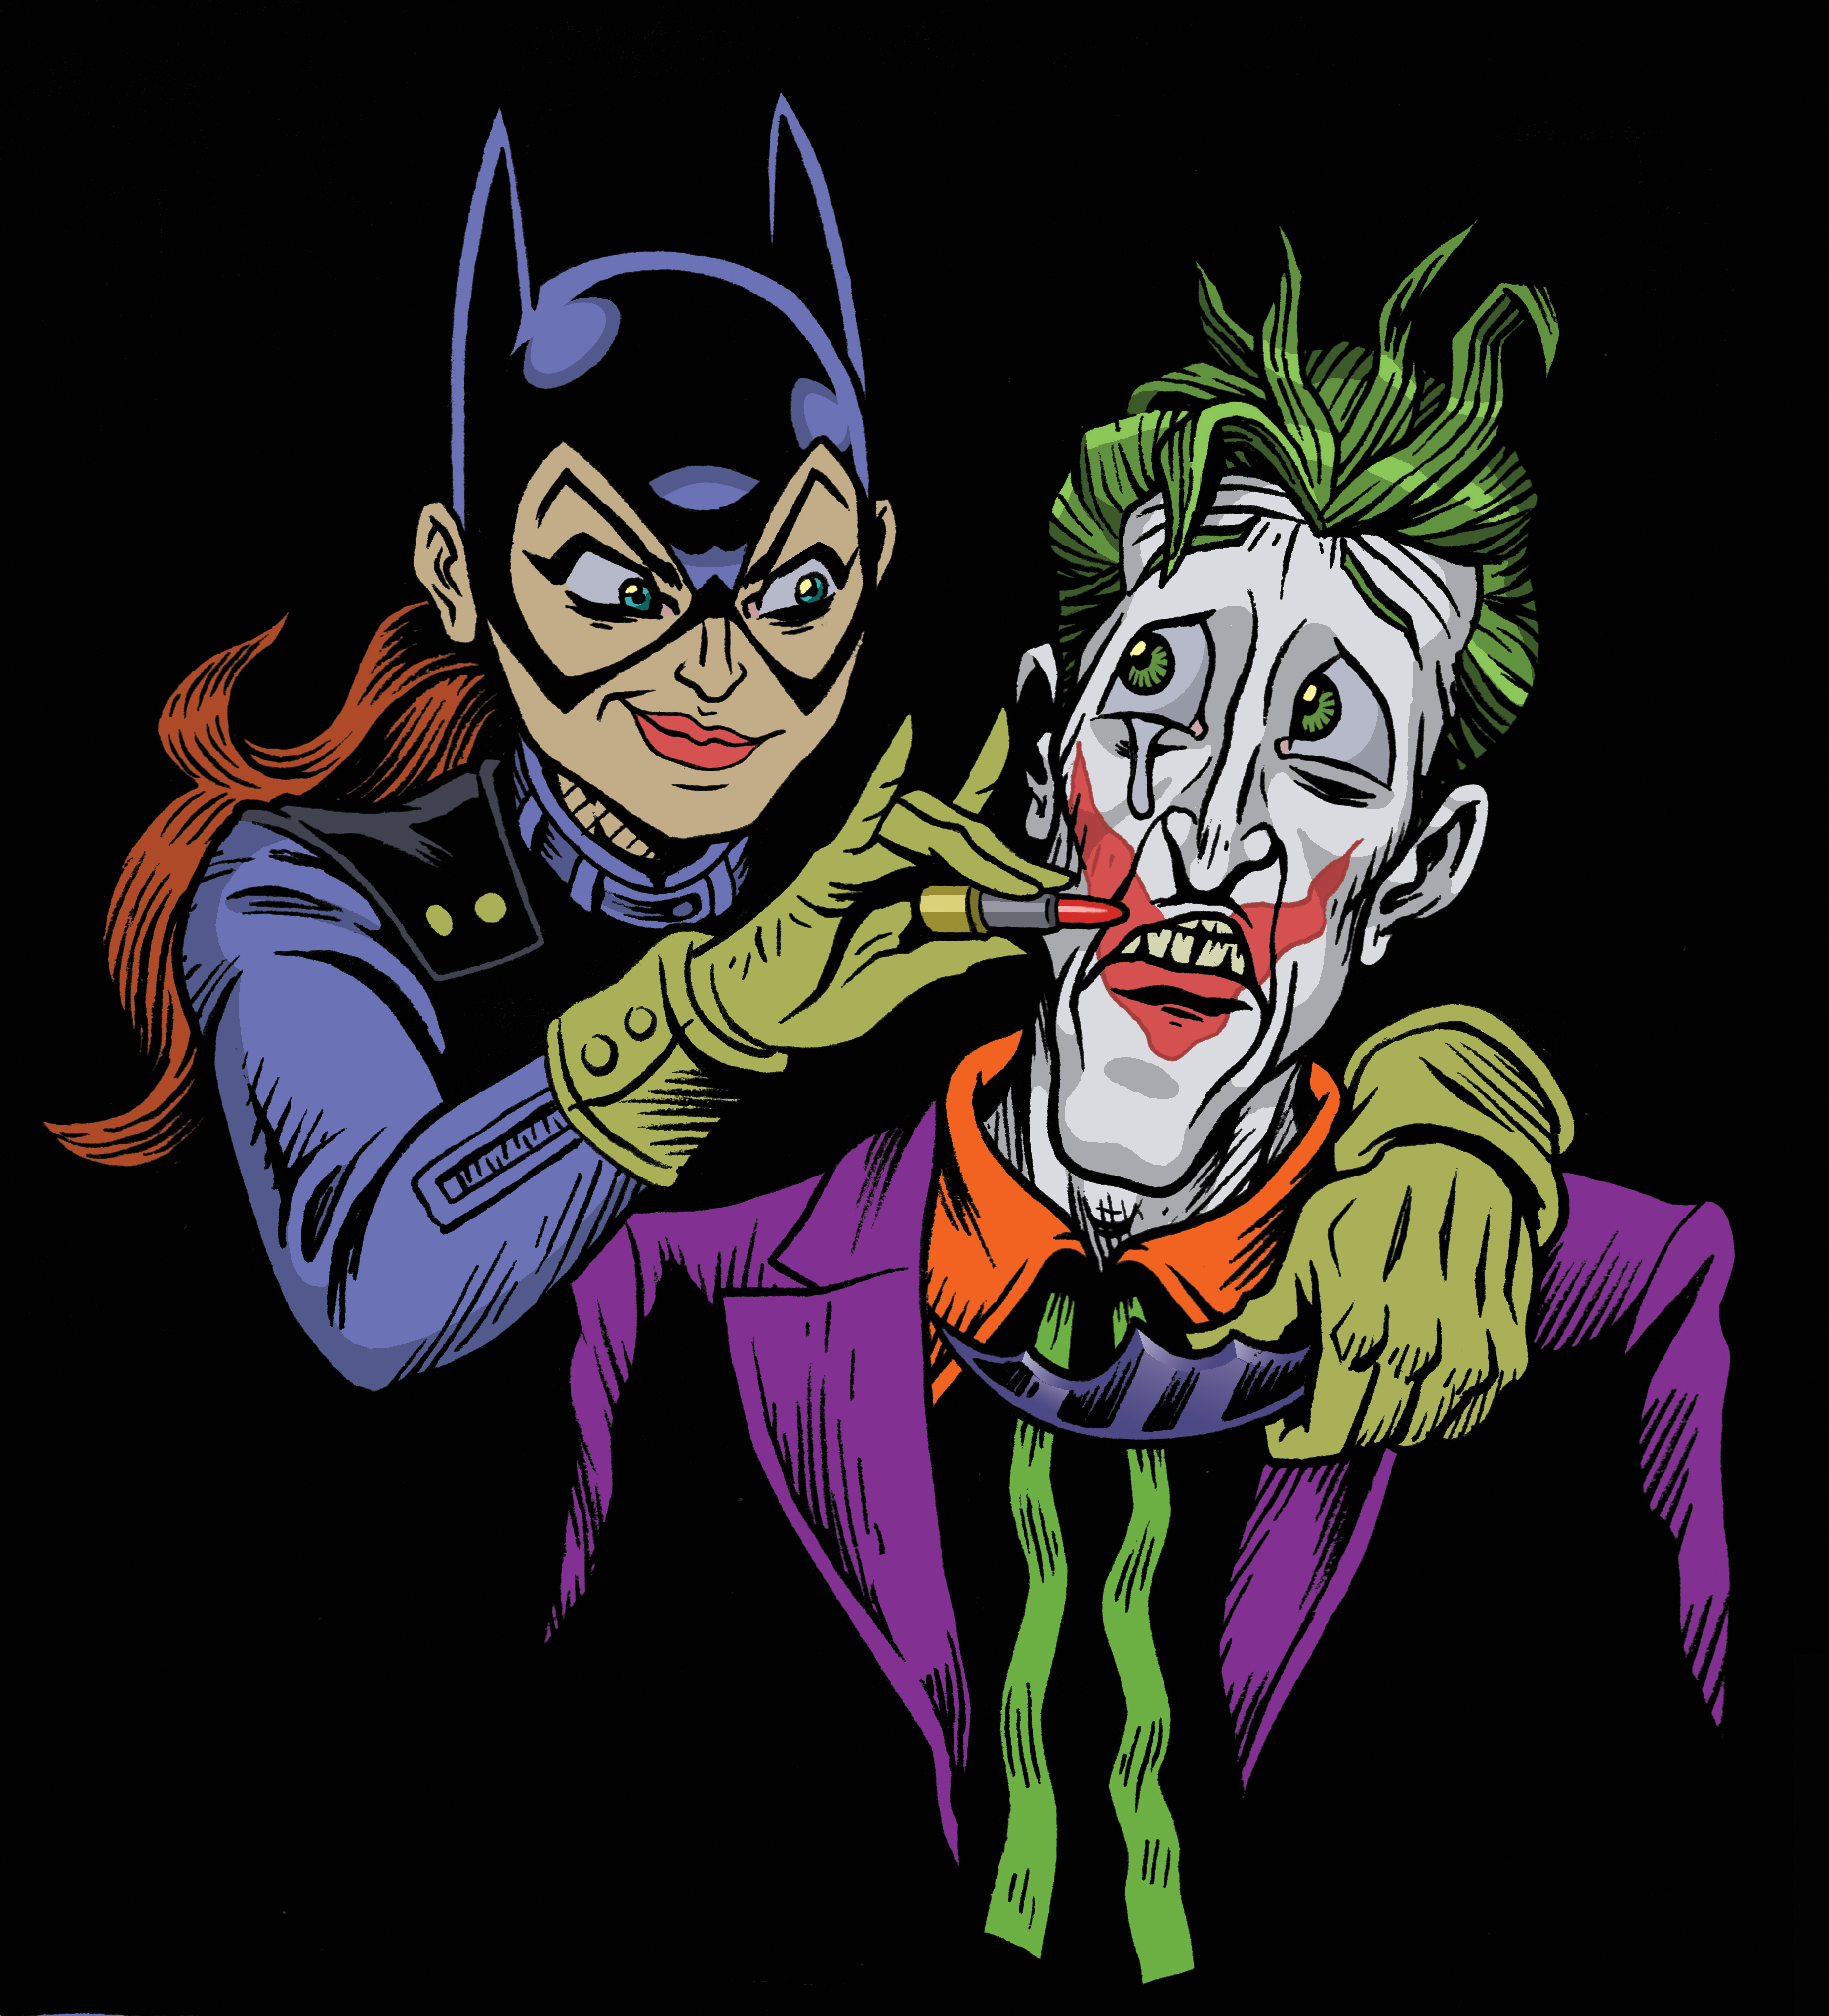 My Take on the Batgirl/Joker Cover by johnhazard on DeviantArt